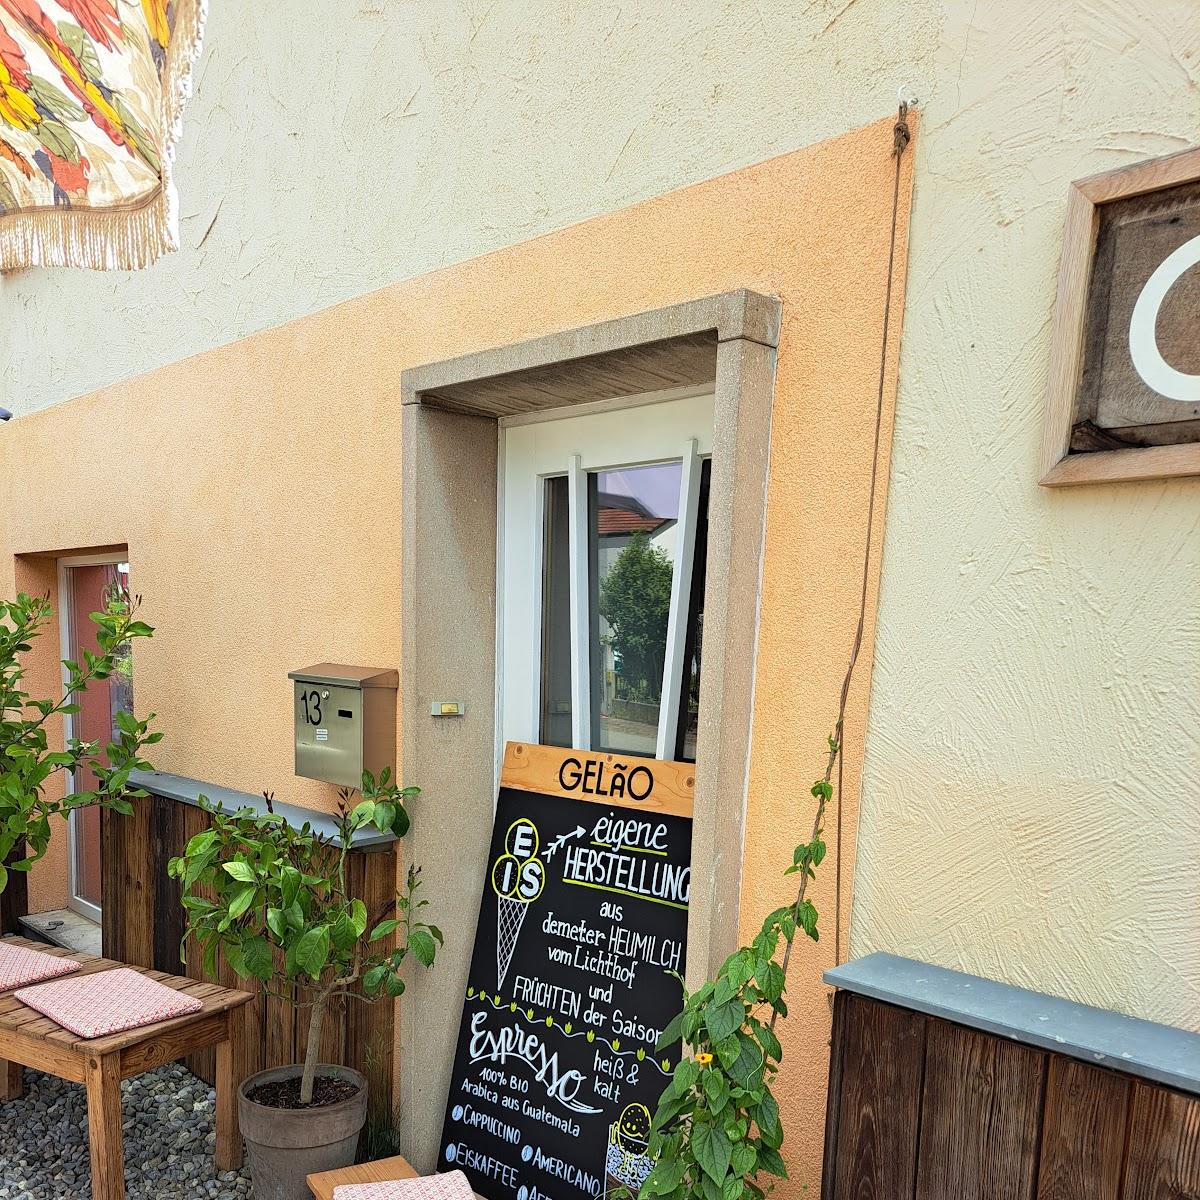 Restaurant "GELÃO - Eismanufaktur" in Bodman-Ludwigshafen